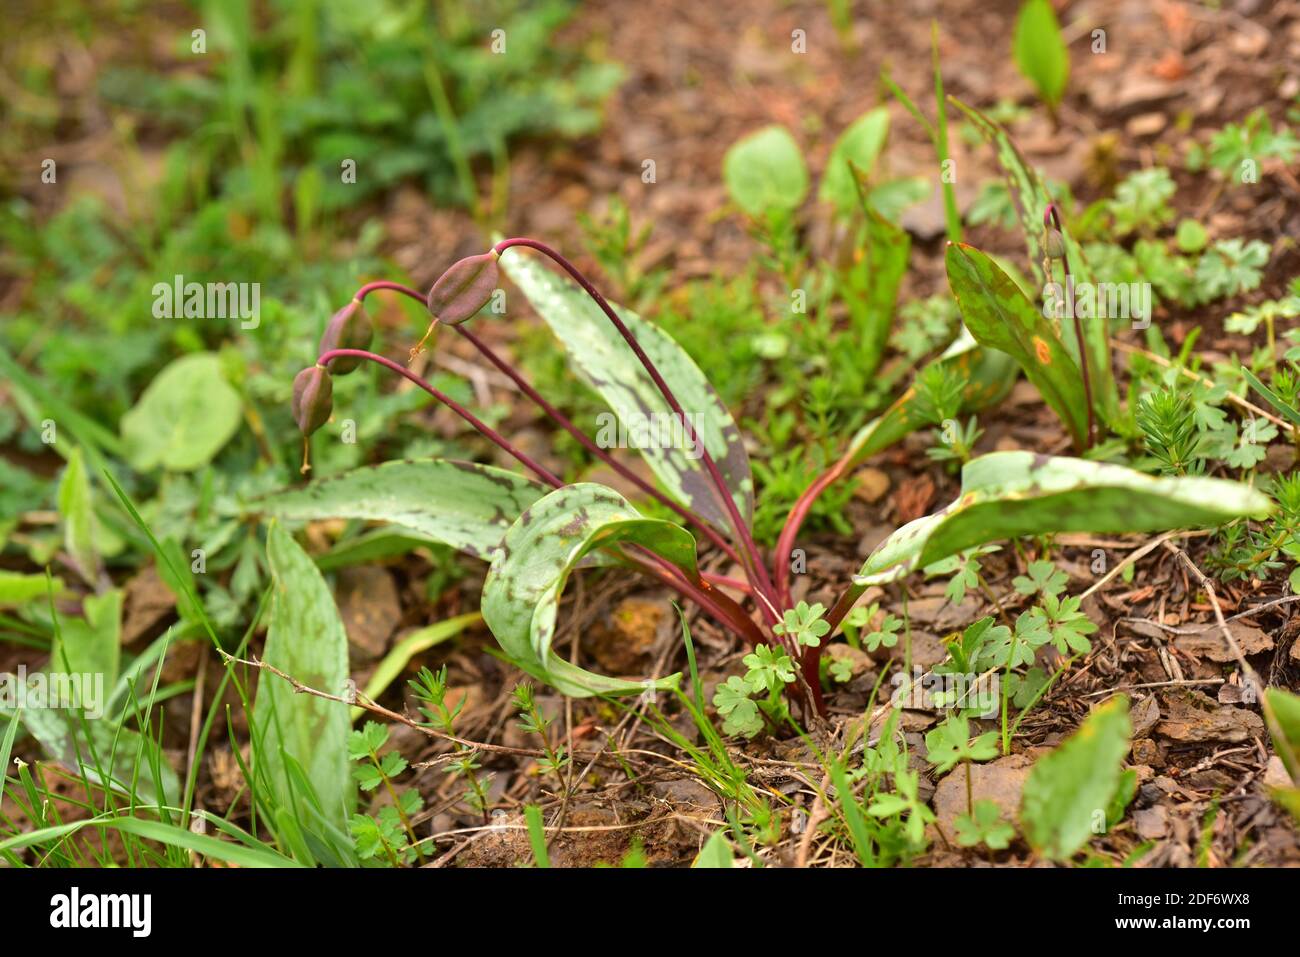 Hahnentrittveilchen (Erythronium dens-canis) ist eine bauchige mehrjährige Pflanze, die in Mitteleuropa und den südeuropäischen Bergen beheimatet ist. Fruchtdetails. Dieses Foto Stockfoto